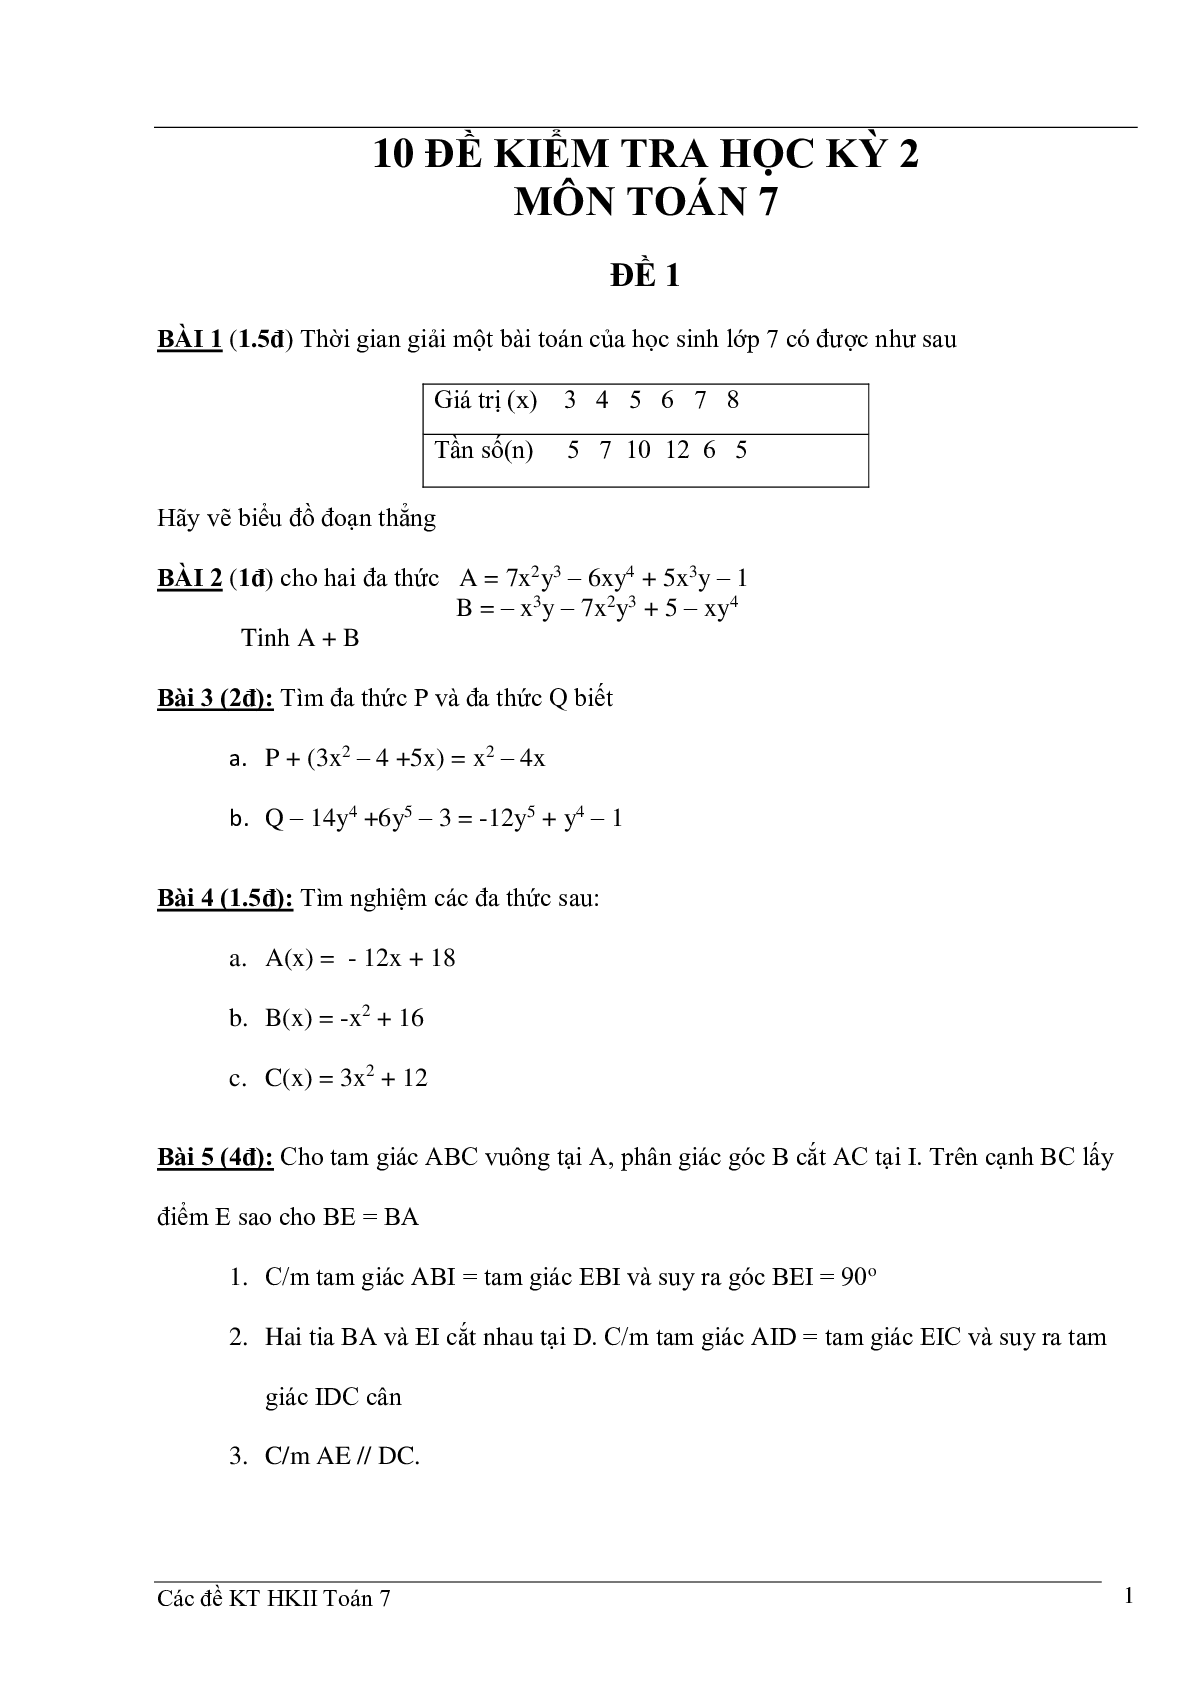 10 đề kiểm tra học kì 2 môn Toán 7 (trang 1)